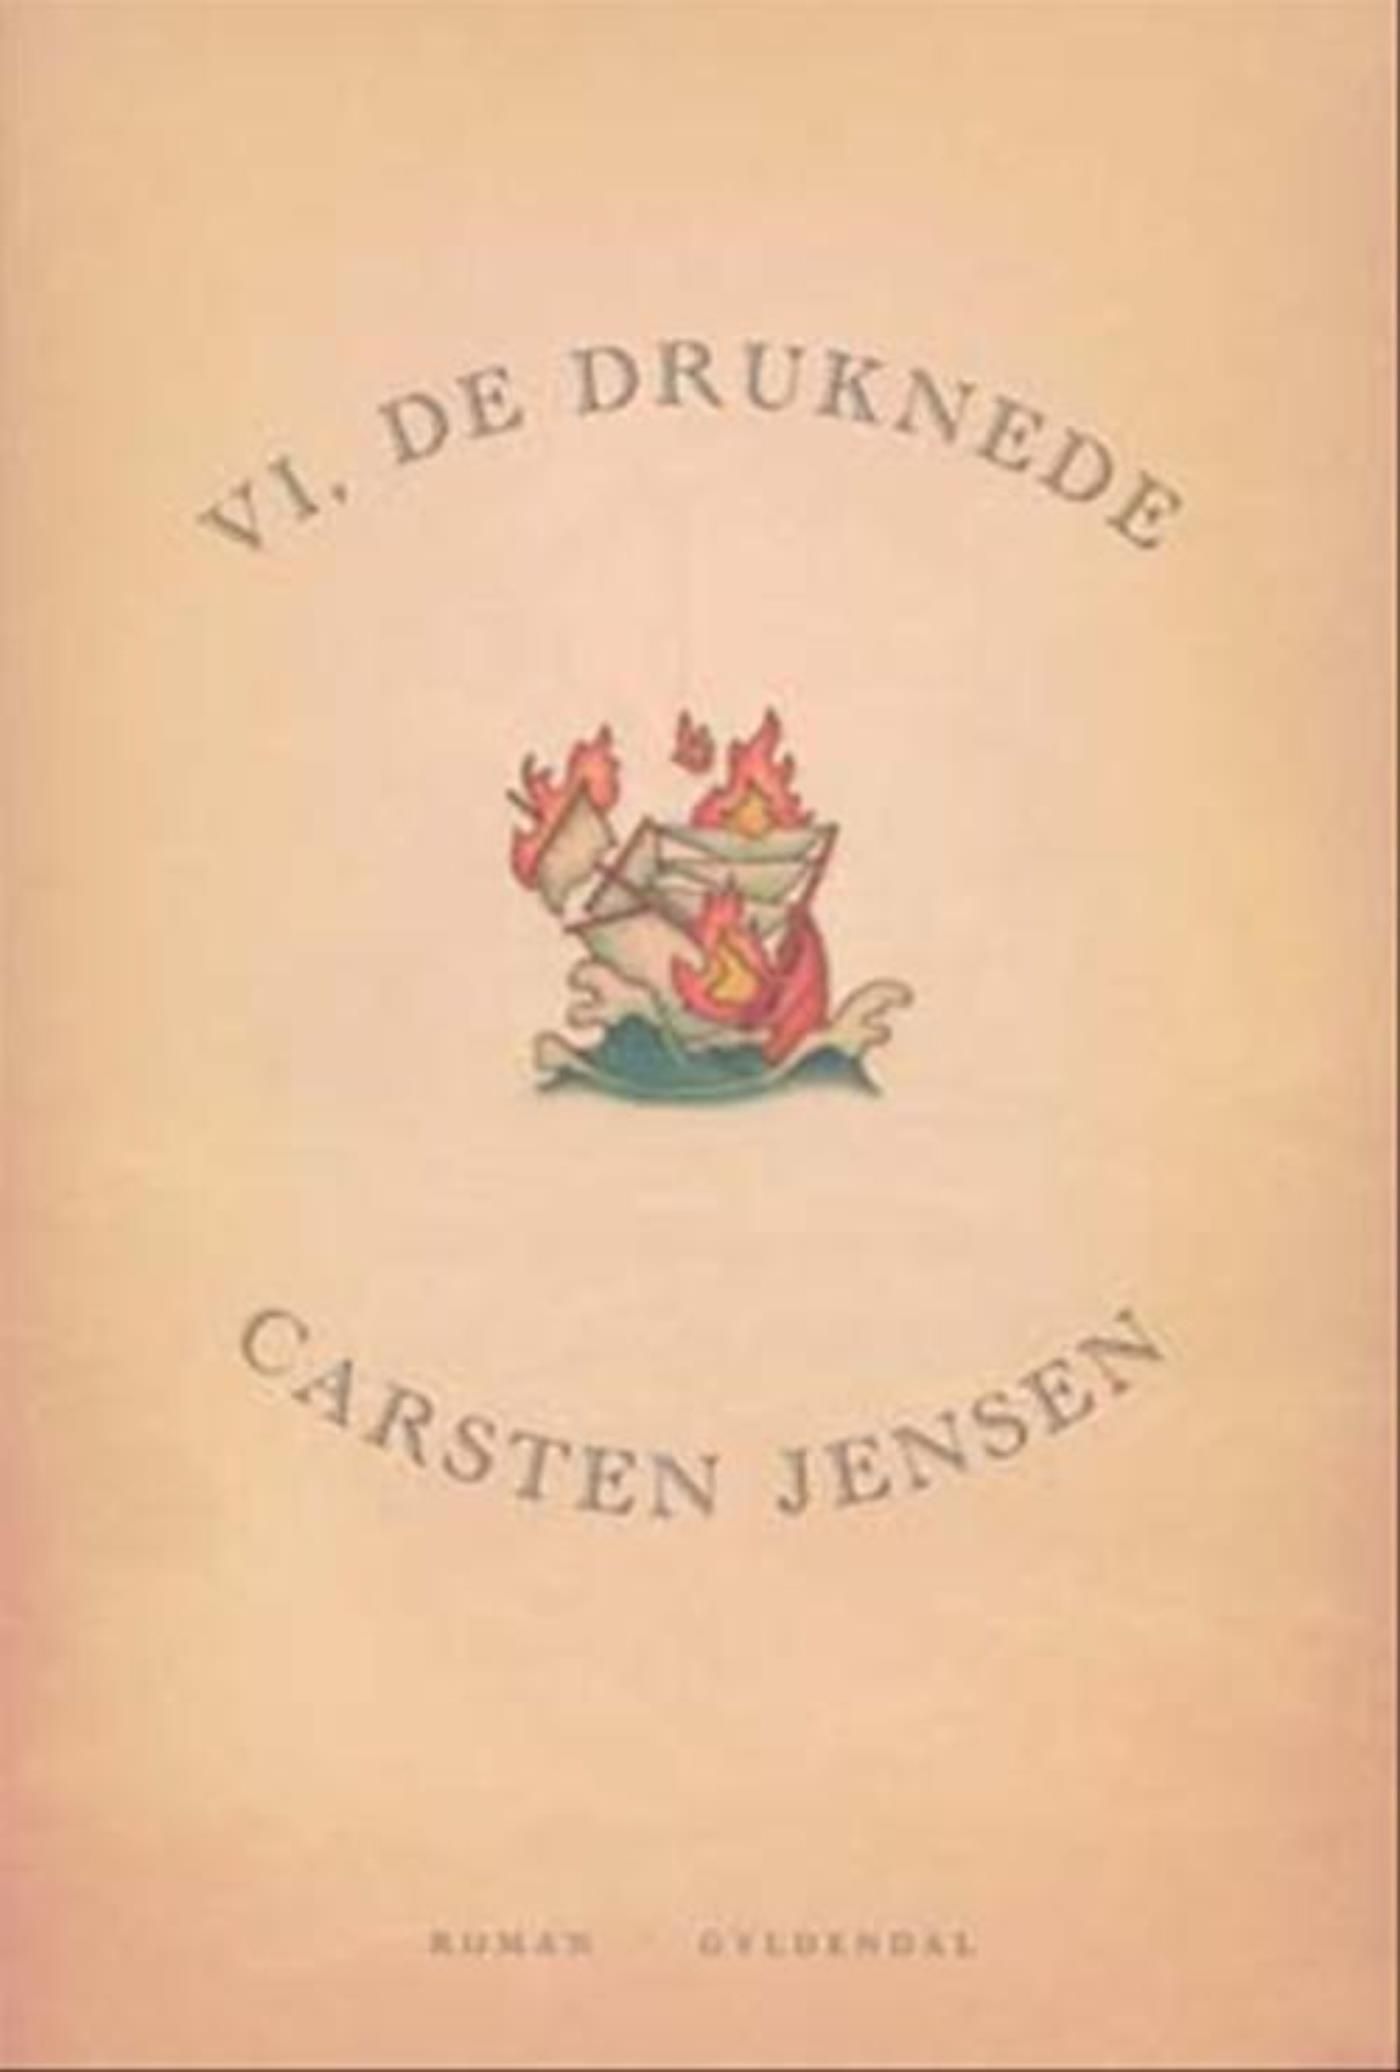 Vi, de druknede, e-bok av Carsten Jensen